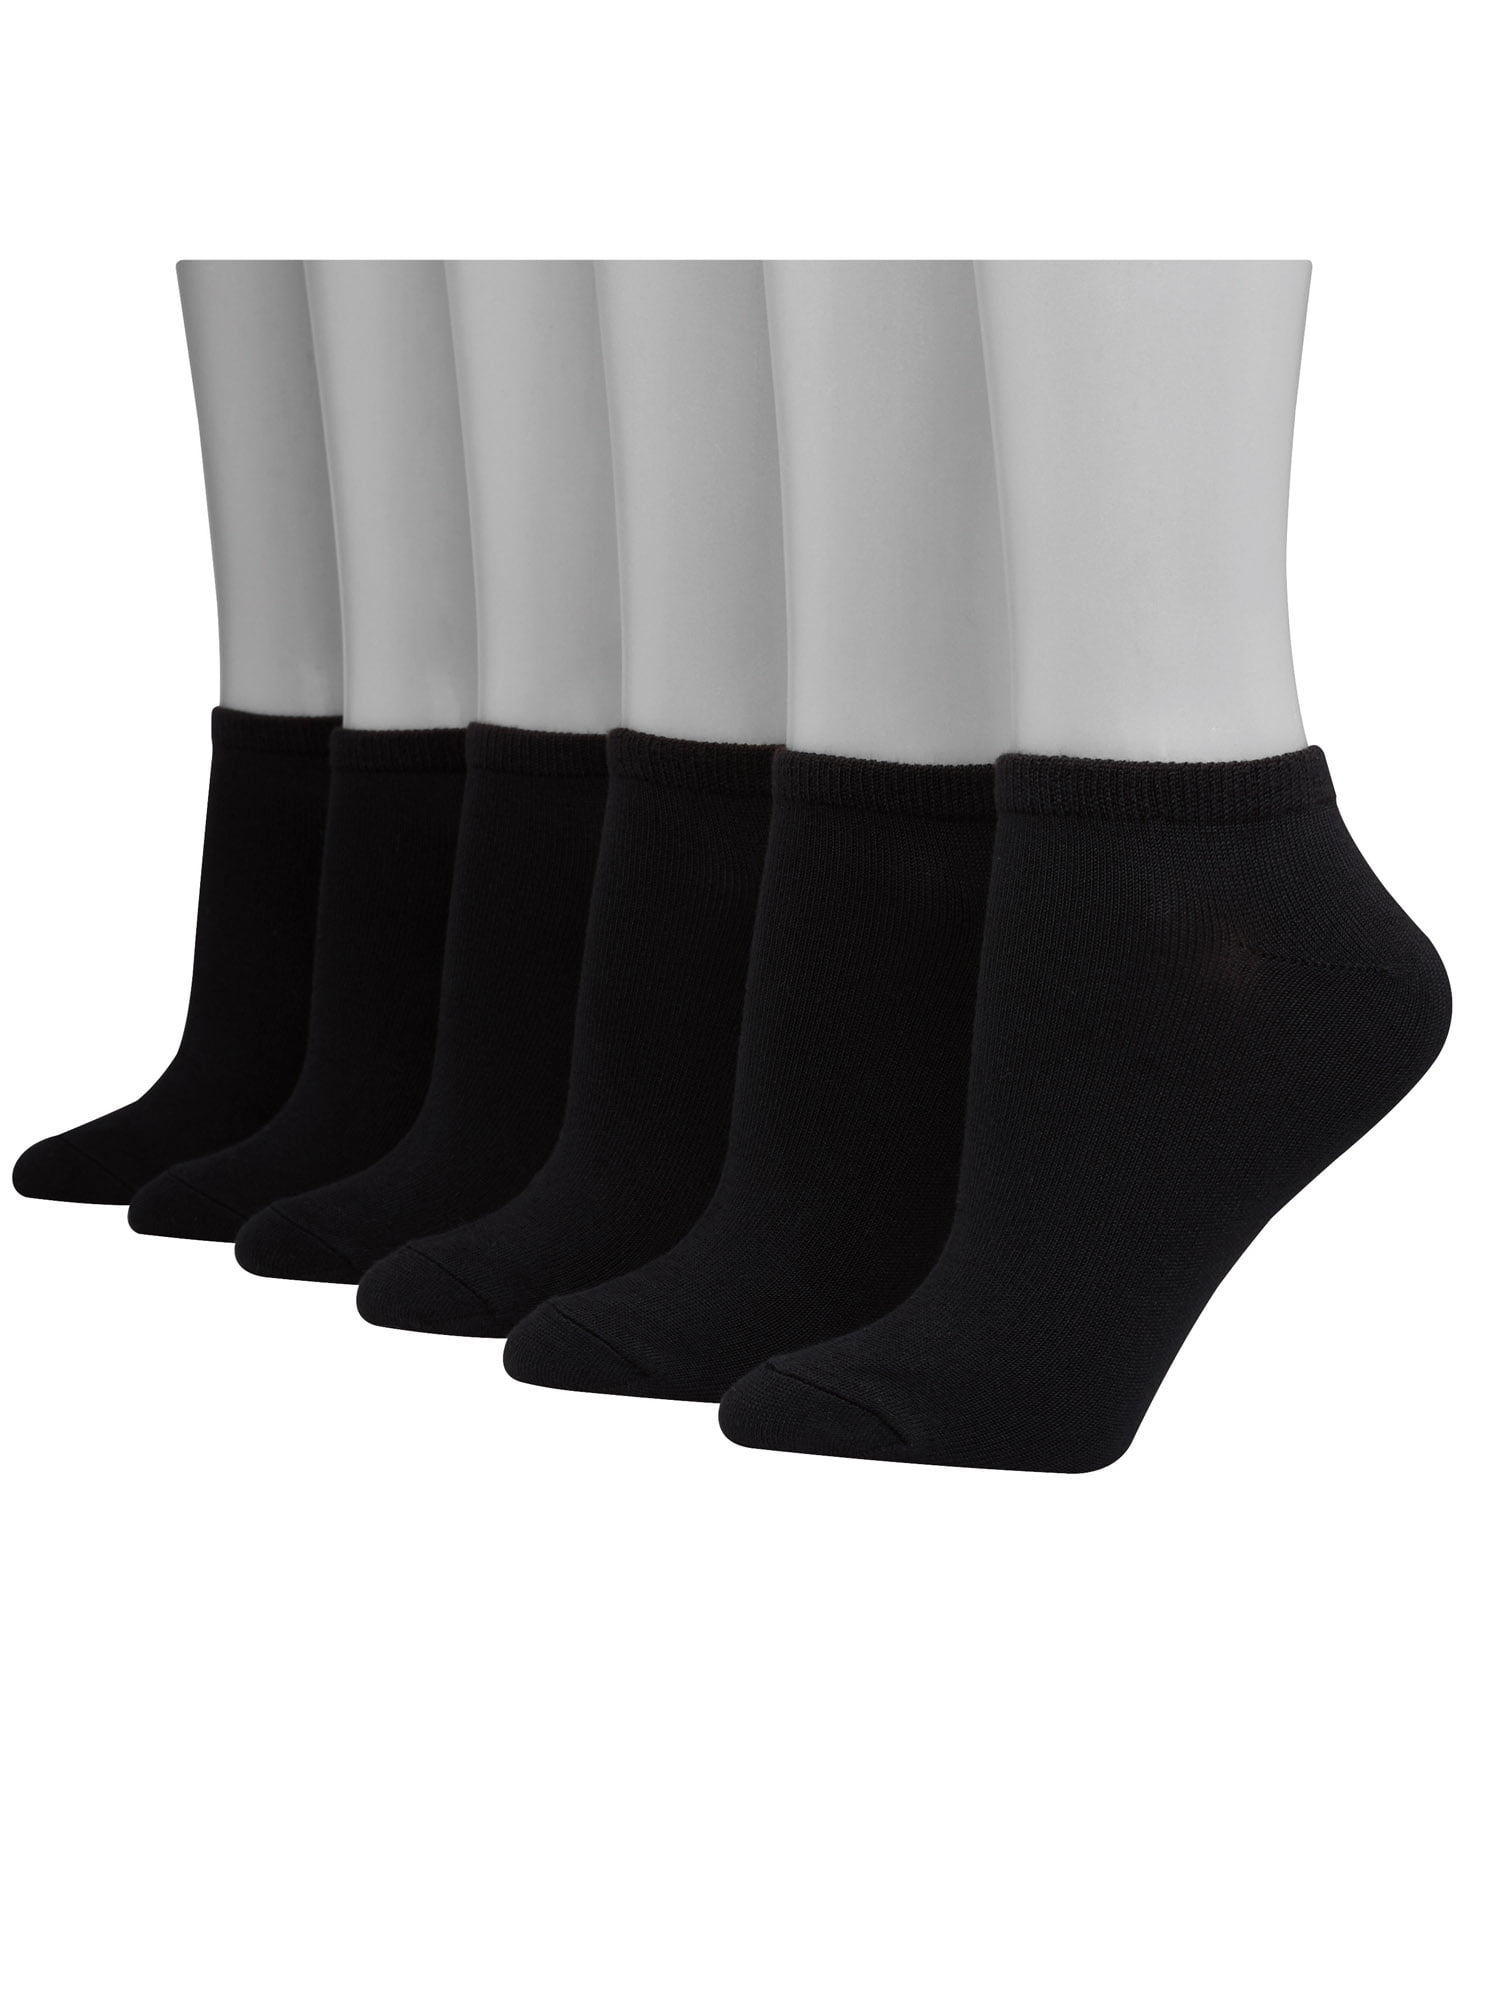 Women's ComfortSoft Low Cut Socks, 6 Pack - Walmart.com